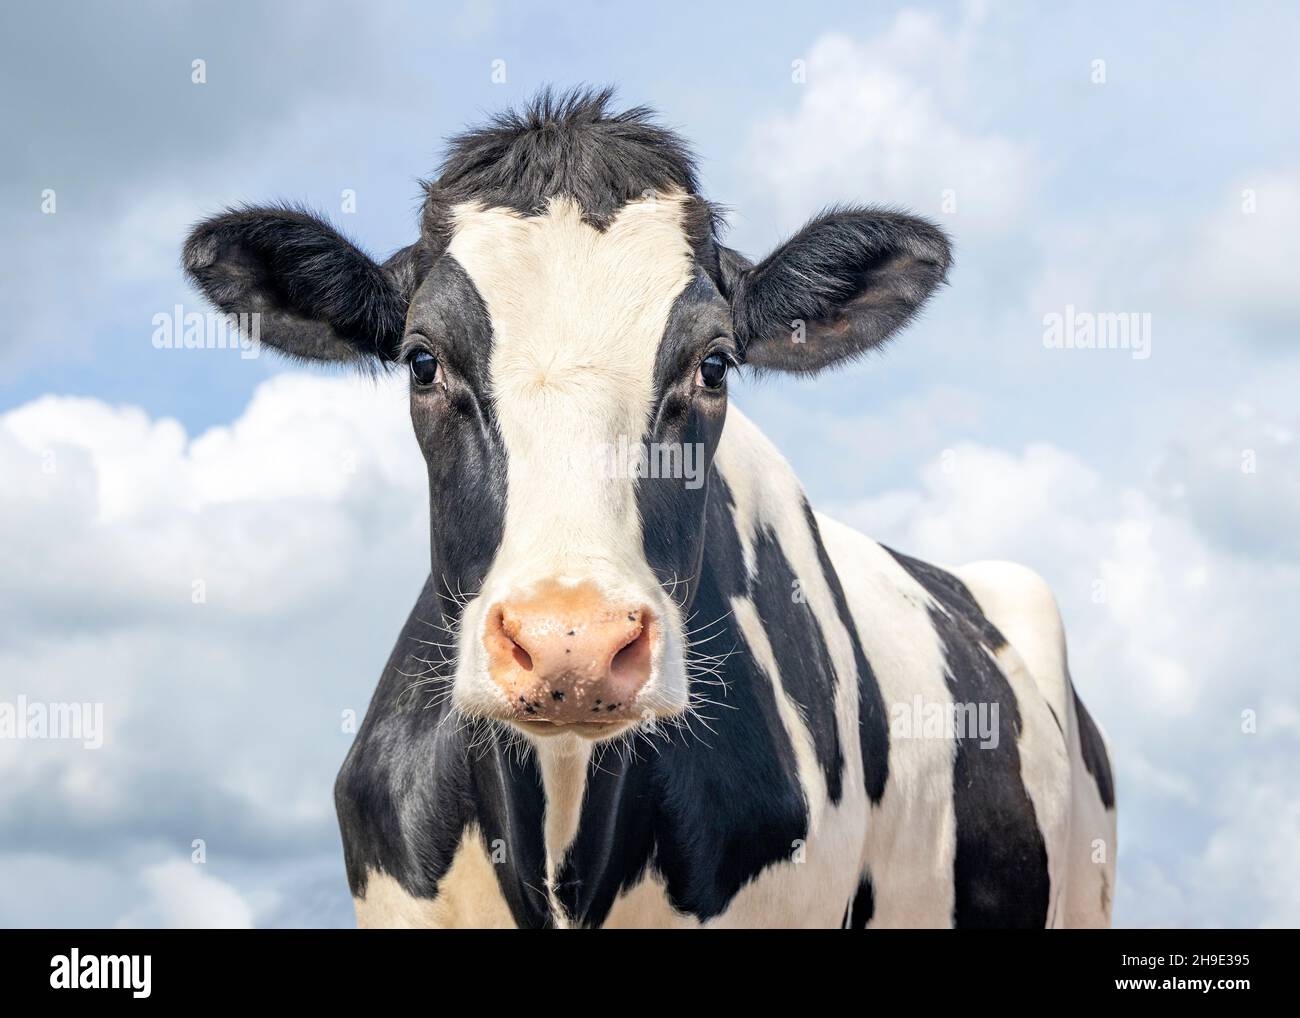 Carino mucca, bianco e nero amichevole innocente aspetto, naso rosa, di fronte a un cielo blu. Foto Stock